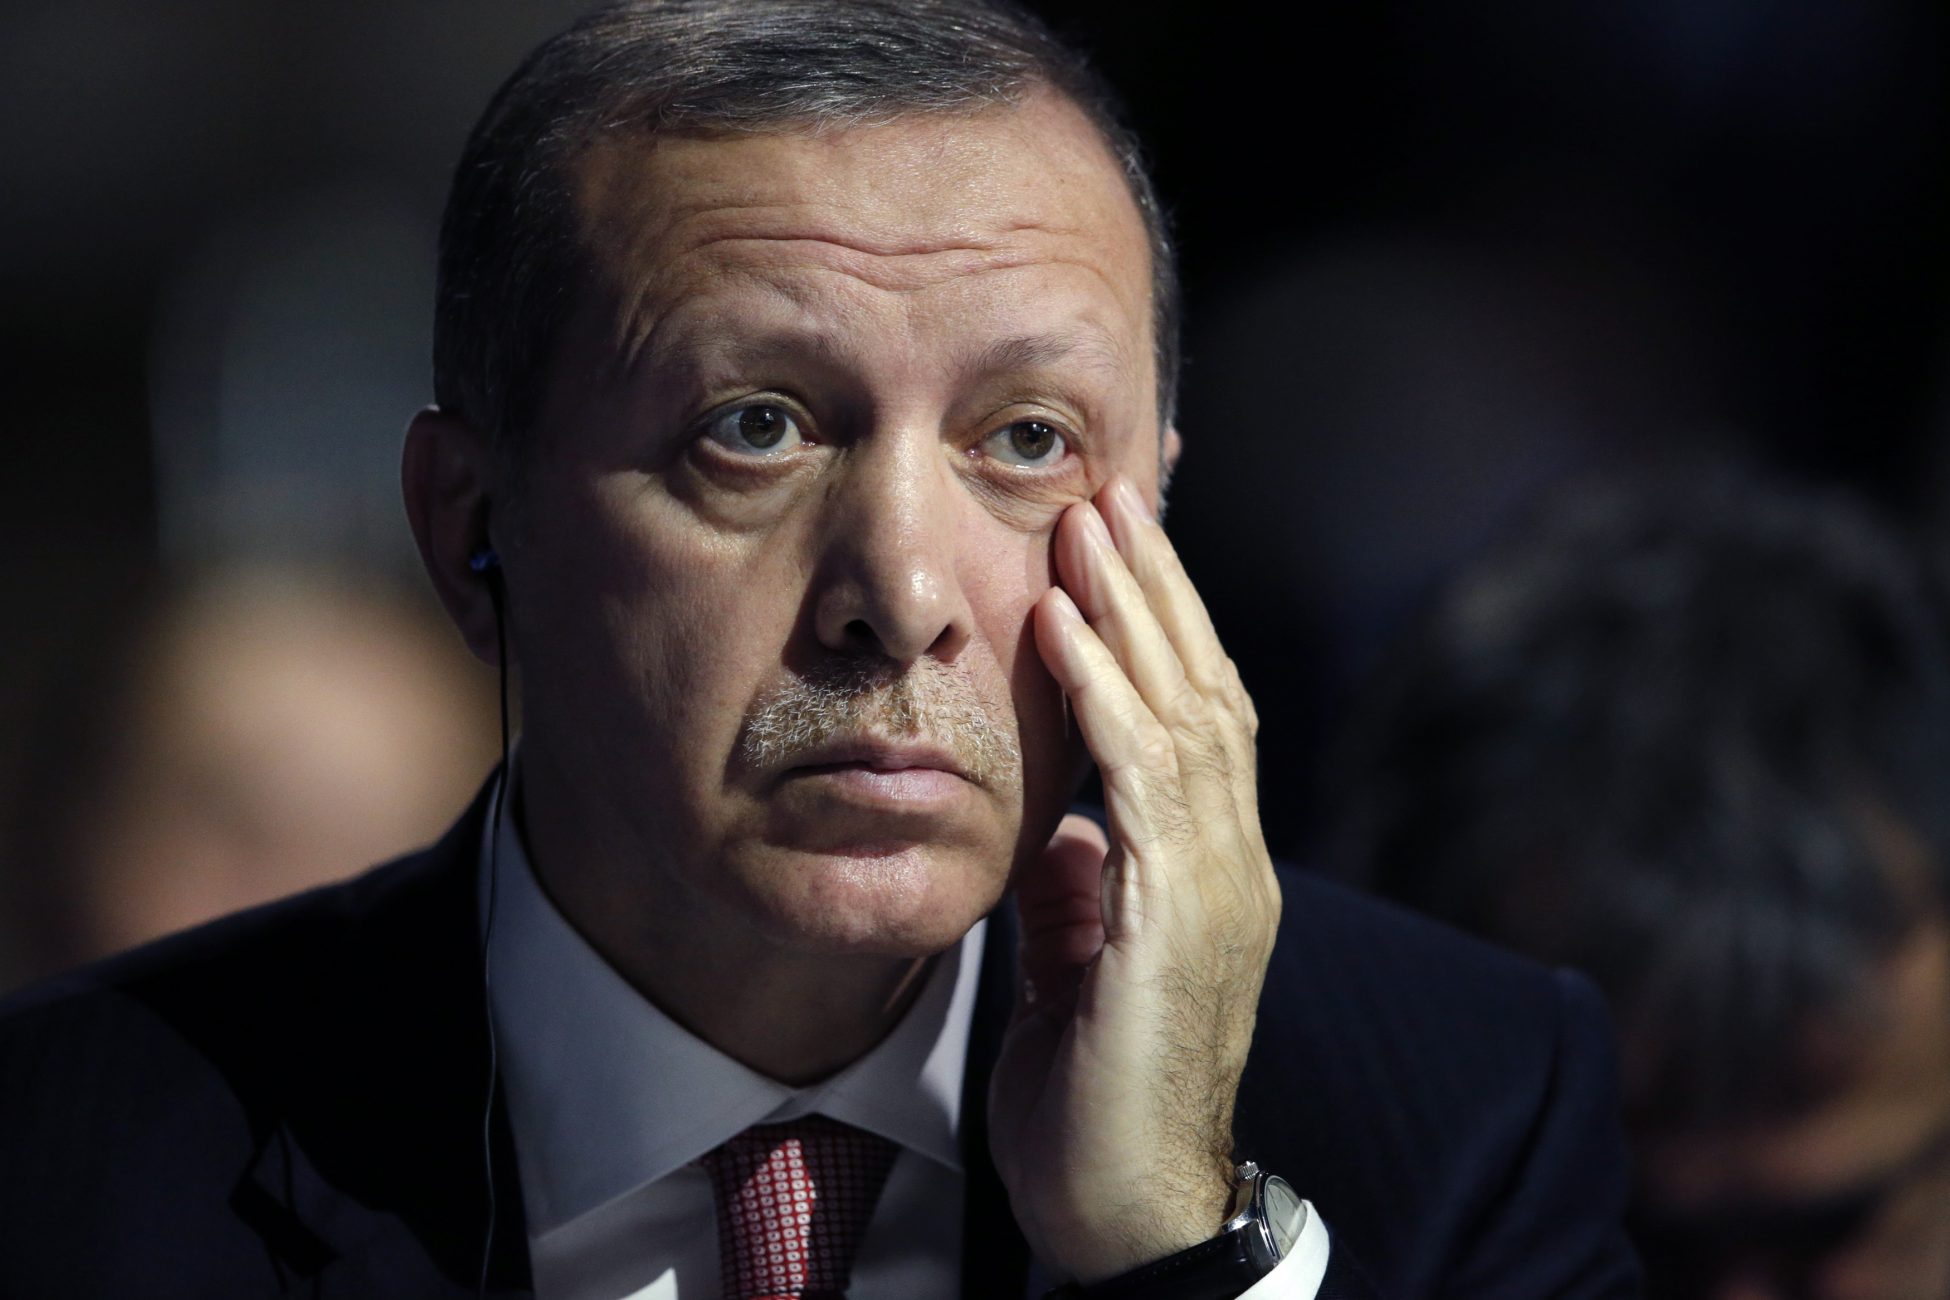 Τουρκική Λίρα: Εθνική καταστροφή, τη μέρα της εθνικής εορτής των Τούρκων – Προς άλμα «εκτάκτου ανάγκης» στα επιτόκια;